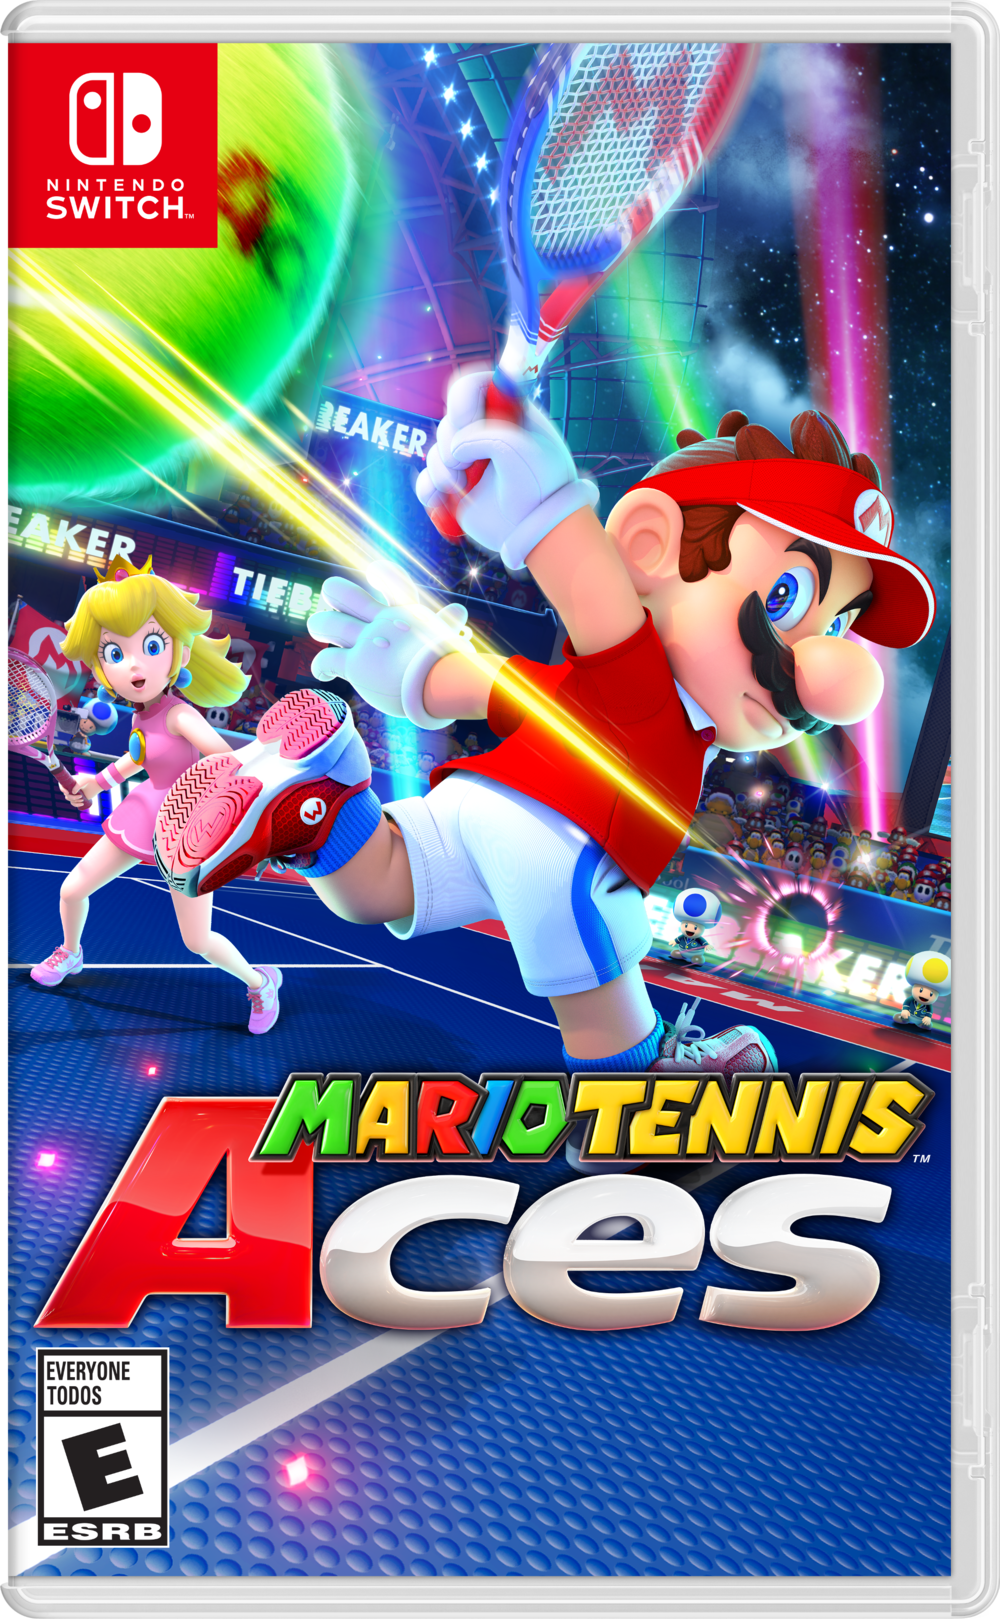 Mario Tennis - Super Mario Wiki, the encyclopedia